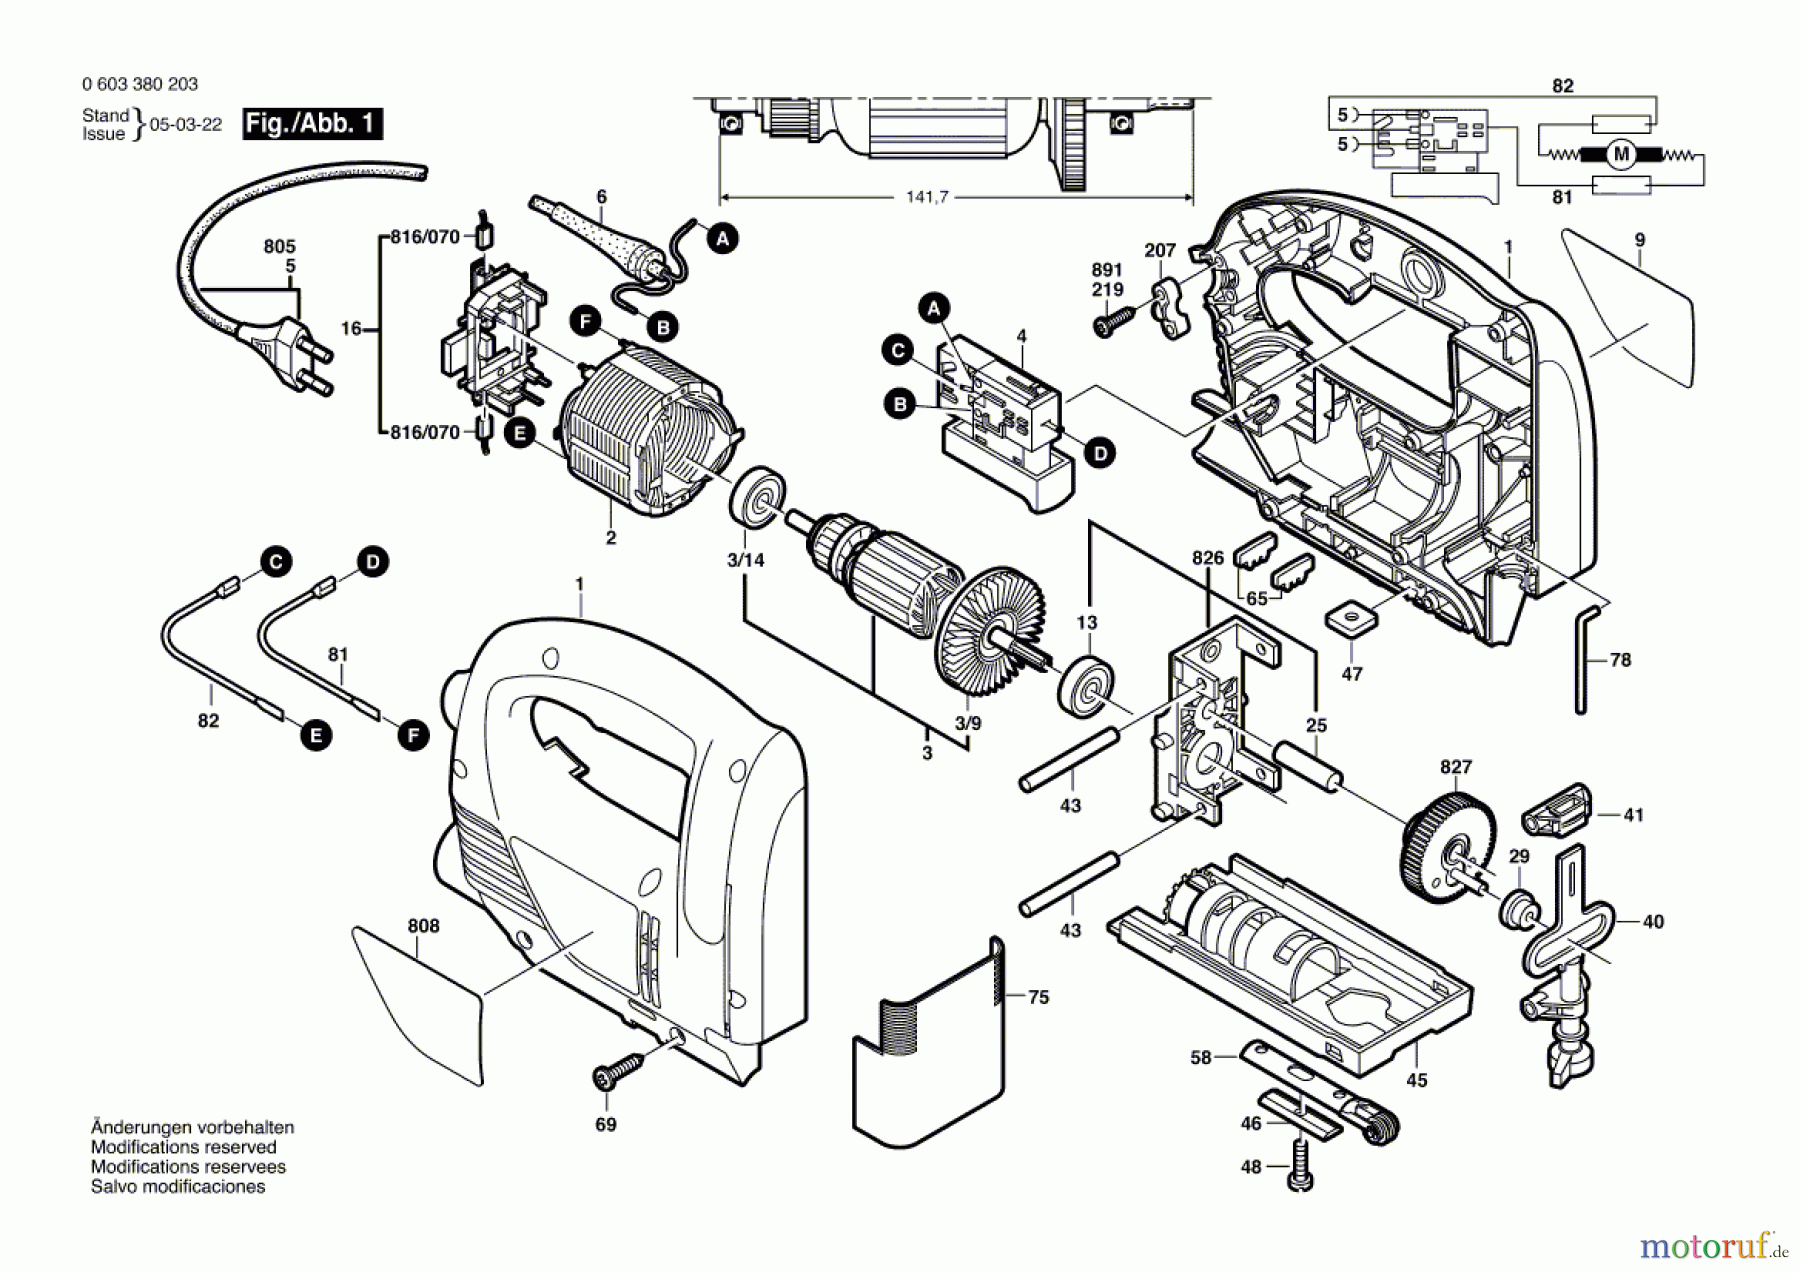  Bosch Werkzeug Stichsäge PST 550 Seite 1